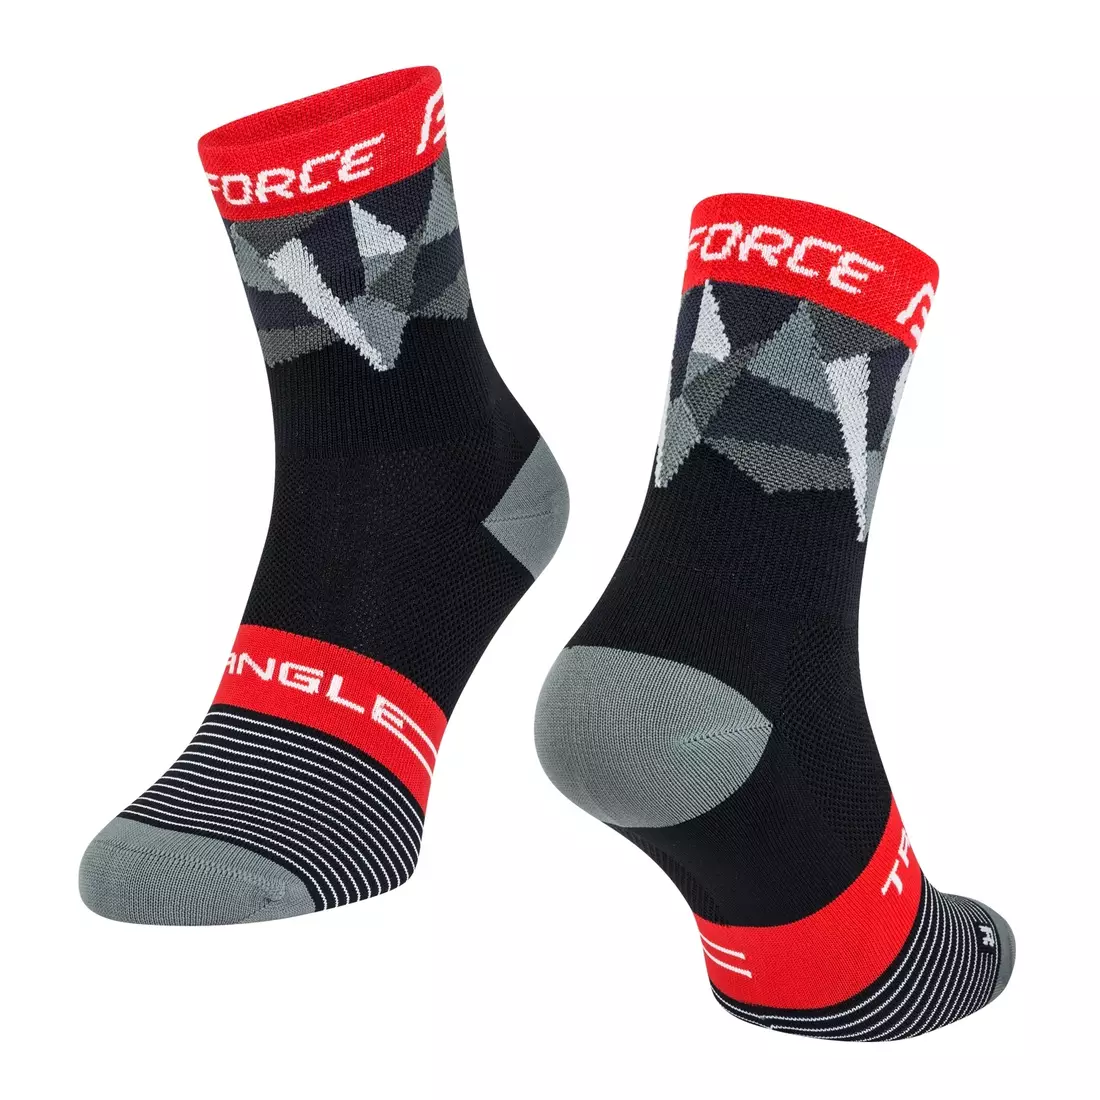 FORCE TRIANGLE kerékpáros/sport zokni, fekete és piros